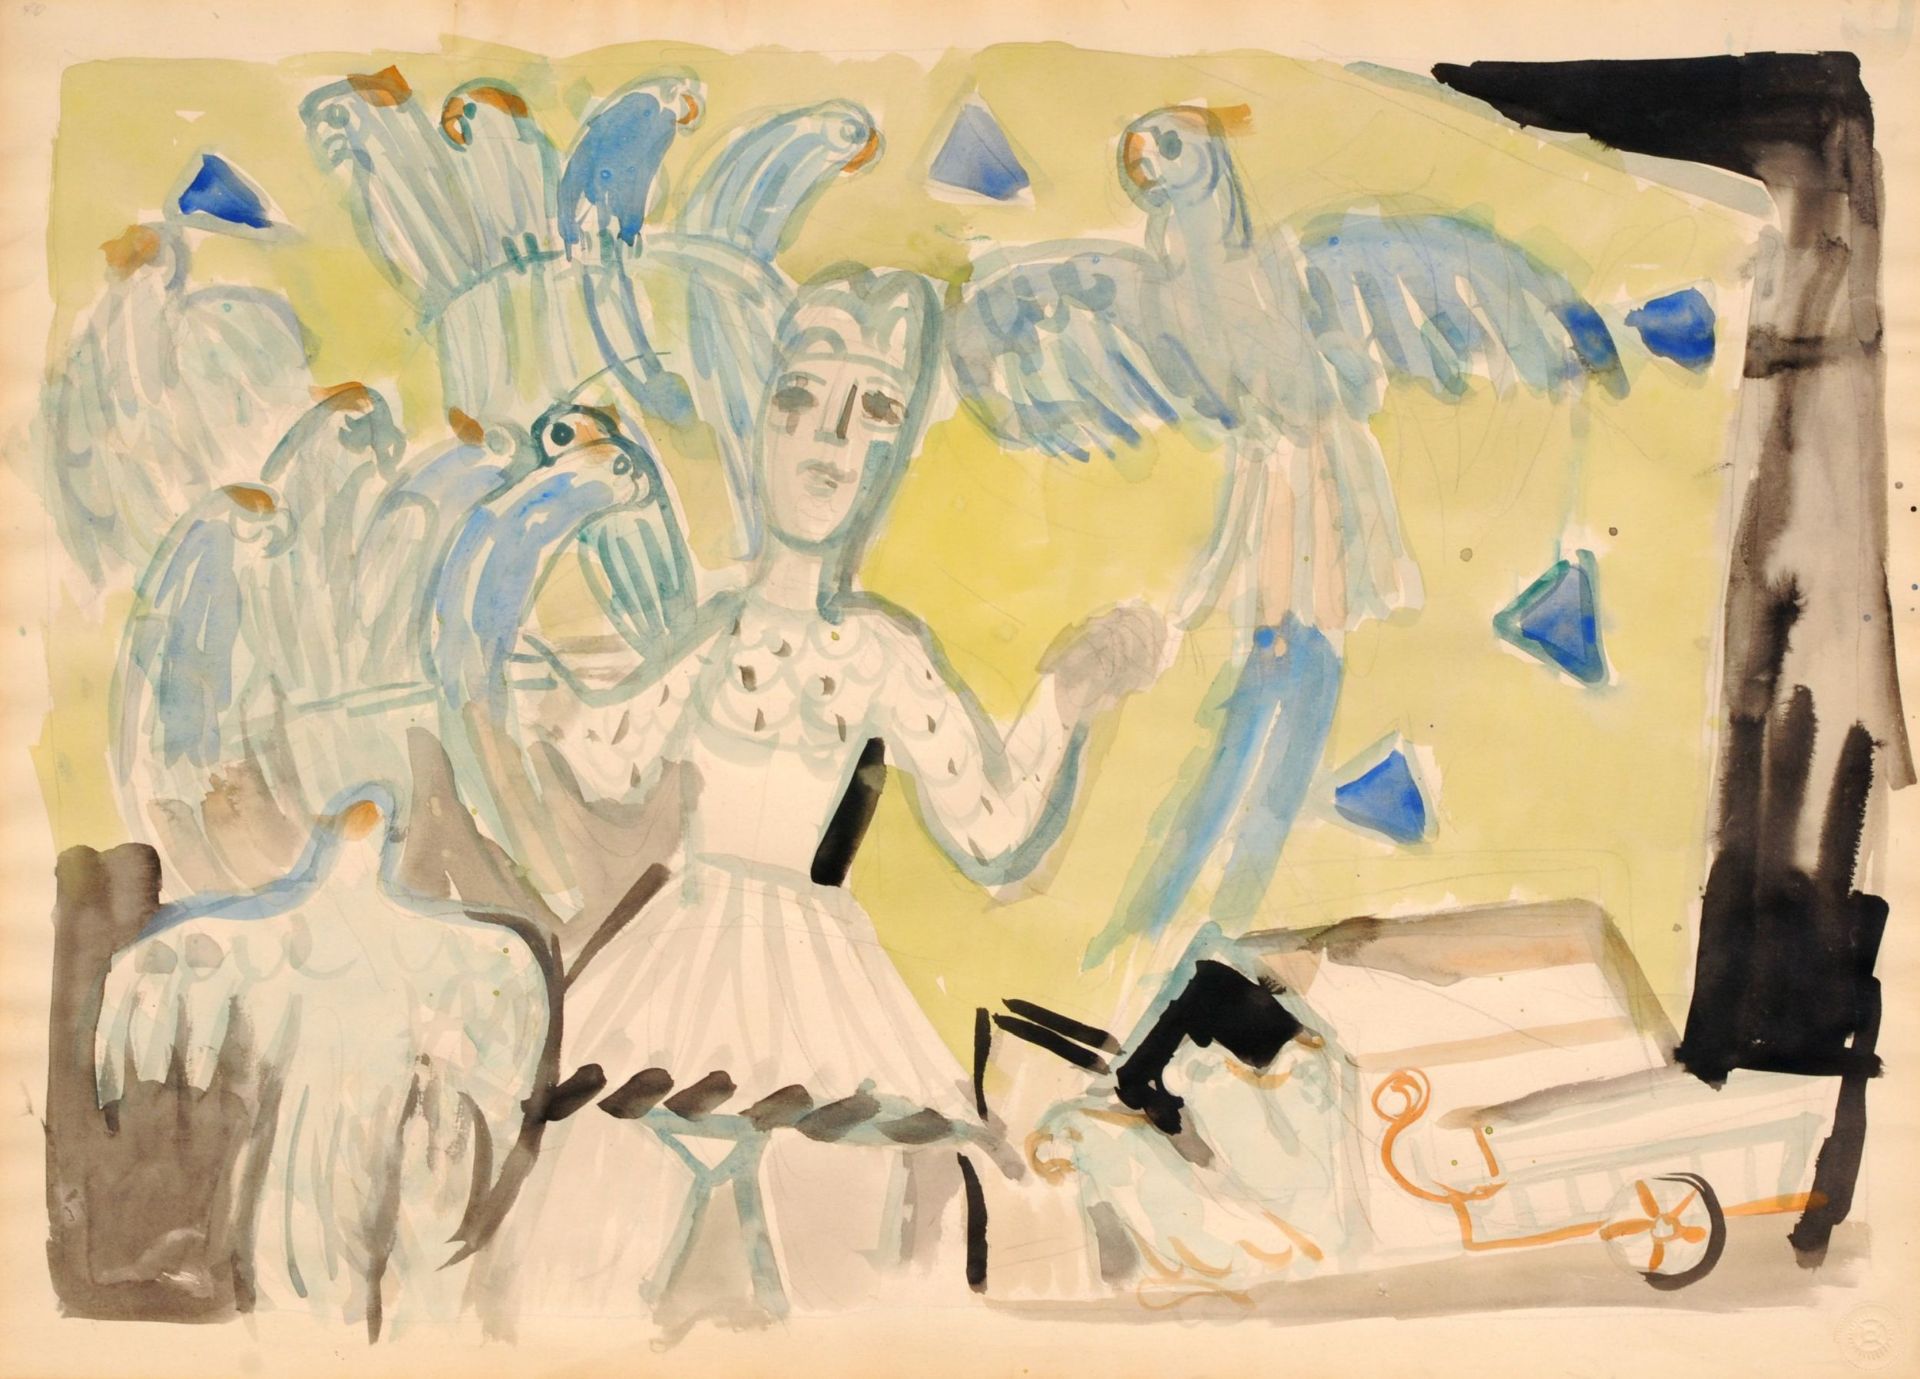 Charles Crodel "Frau mit Papageien" (Artistin mit Kakadus). Wohl 1960er Jahre.